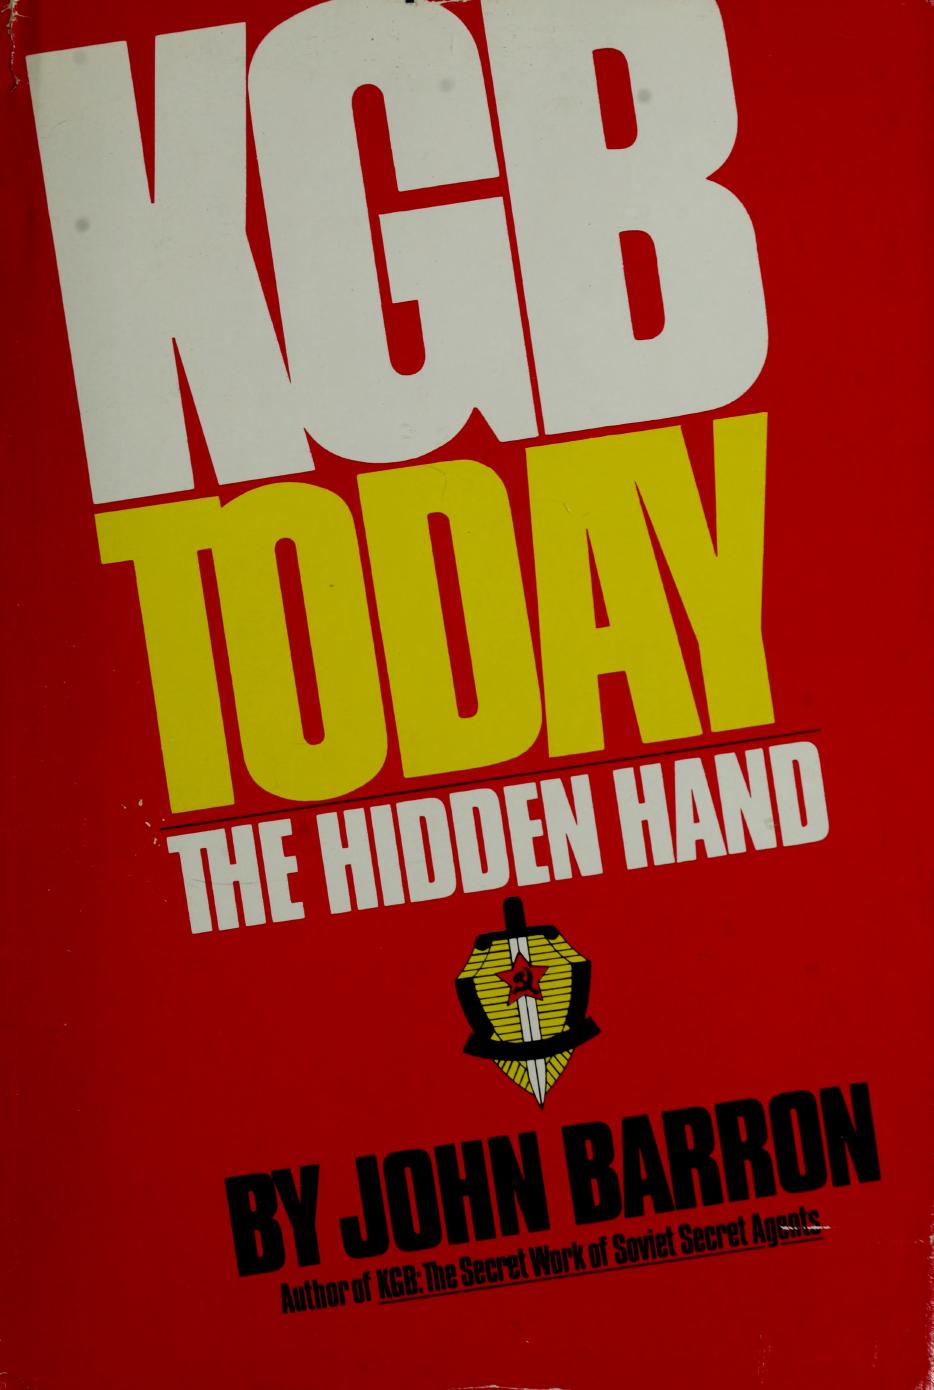 KGB today : the hidden hand